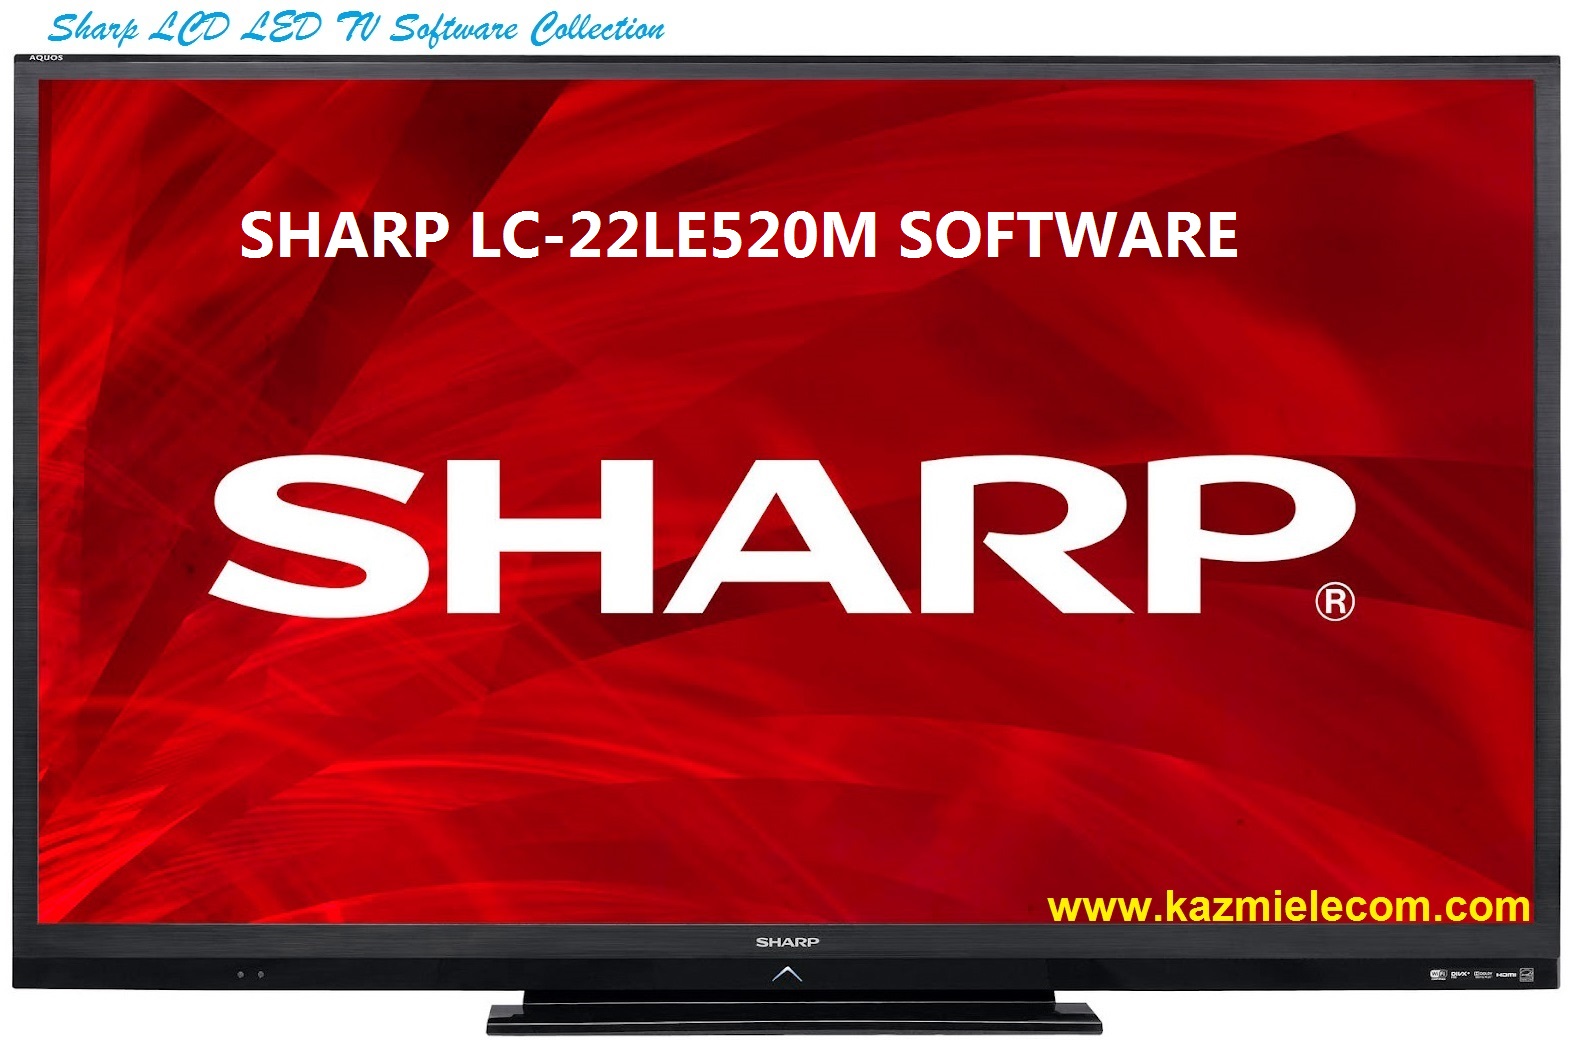 Sharp Lc-22Le520M